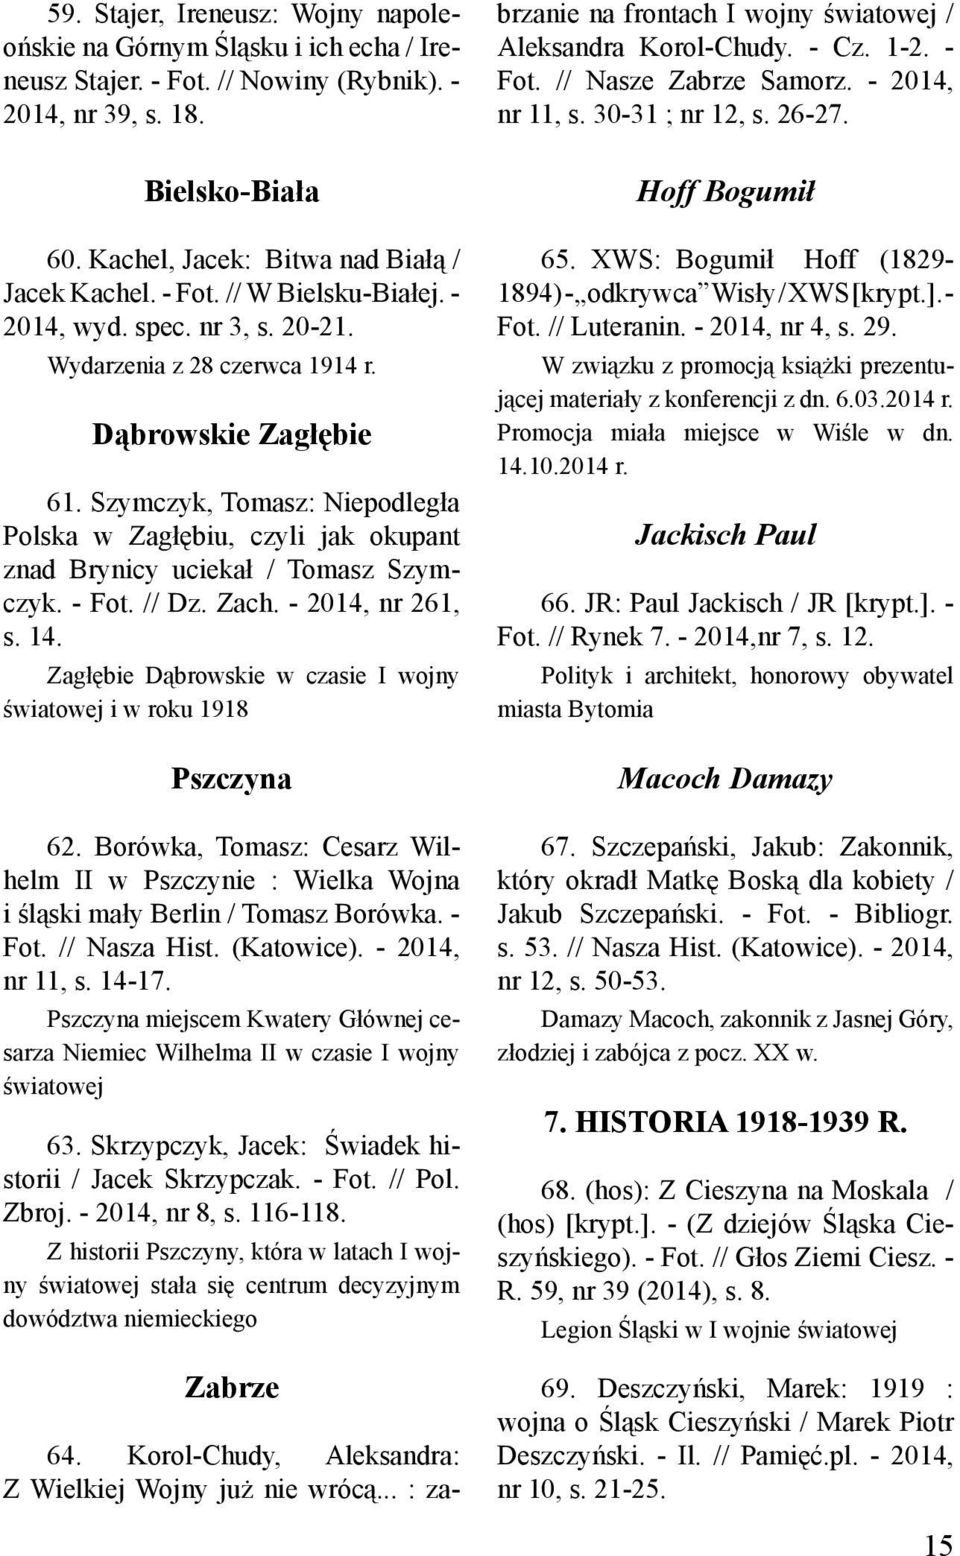 Szymczyk, Tomasz: Niepodległa Polska w Zagłębiu, czyli jak okupant znad Brynicy uciekał / Tomasz Szymczyk. - Fot. // Dz. Zach. - 2014, nr 261, s. 14.